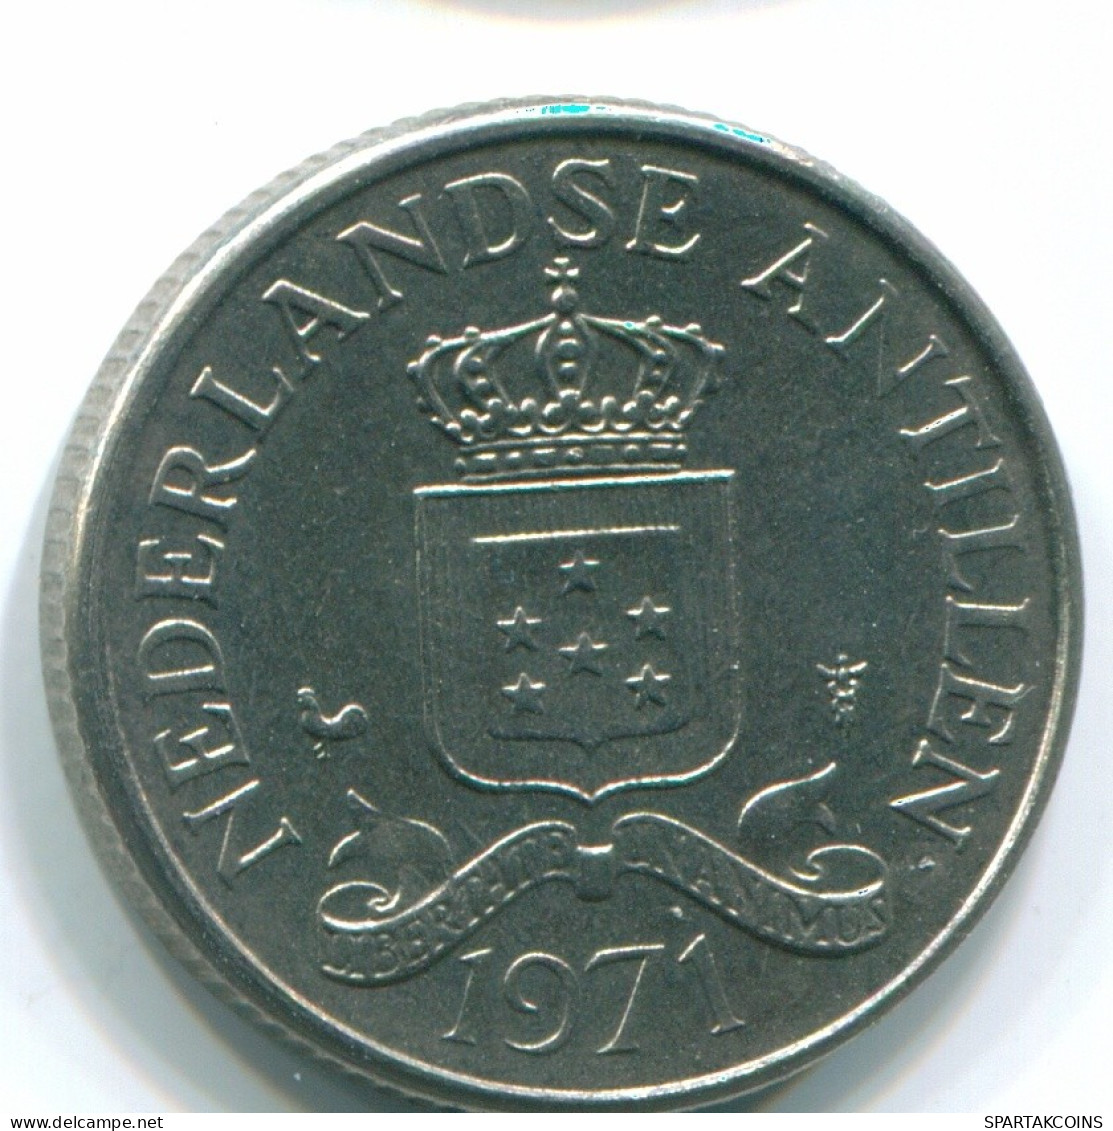 25 CENTS 1971 NIEDERLÄNDISCHE ANTILLEN Nickel Koloniale Münze #S11483.D.A - Niederländische Antillen